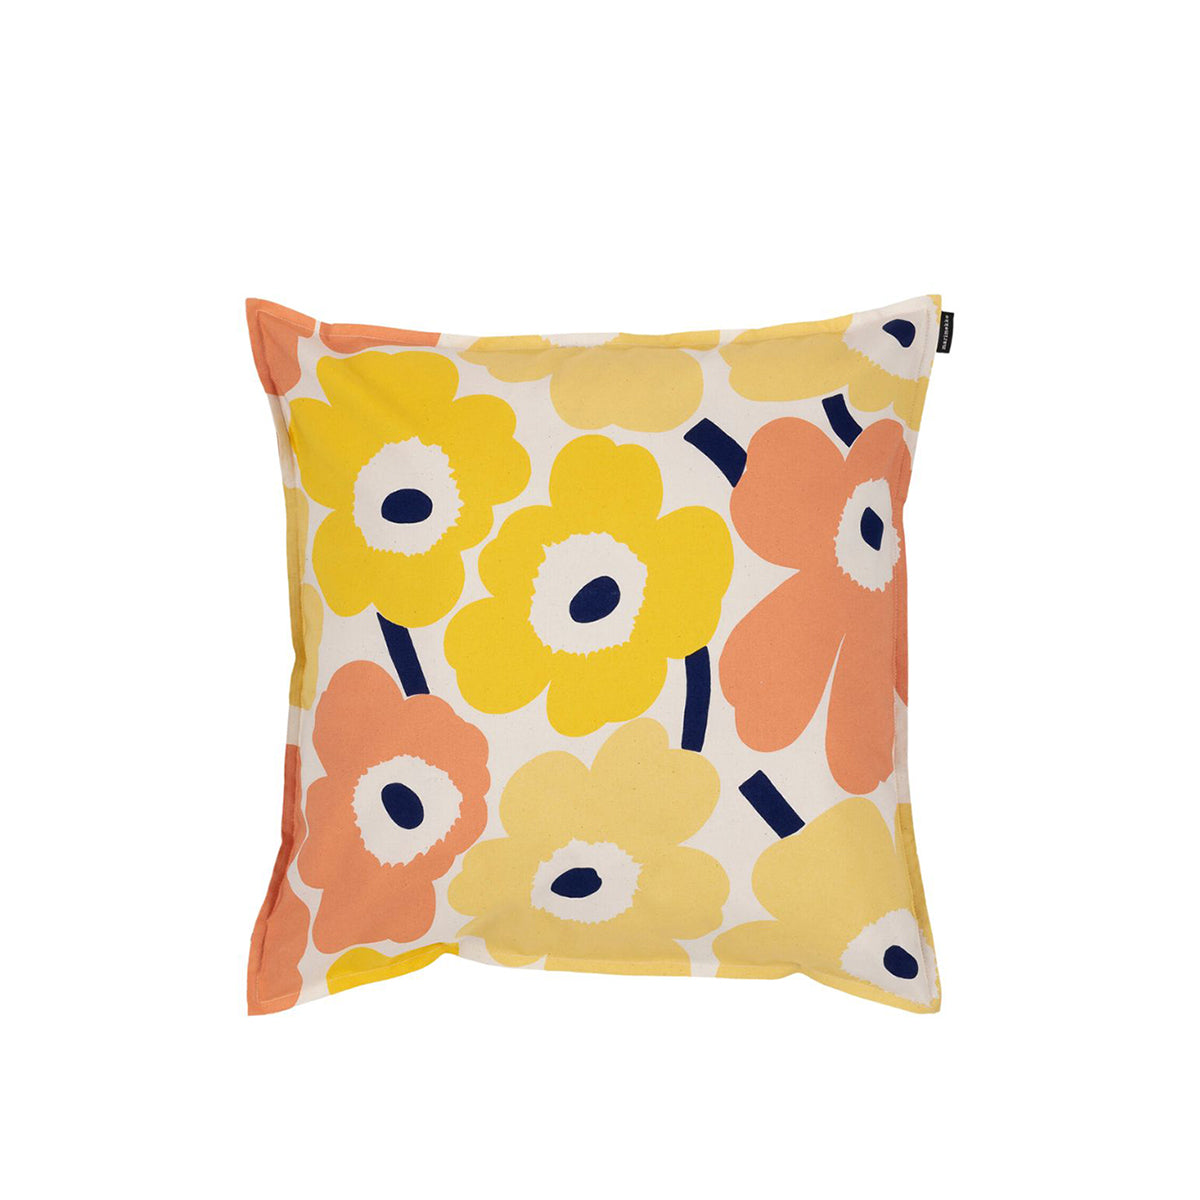 Pieni Unikko Cushion Cover Yellow/Coral/Butter 50 x 50cm PRE ORDER